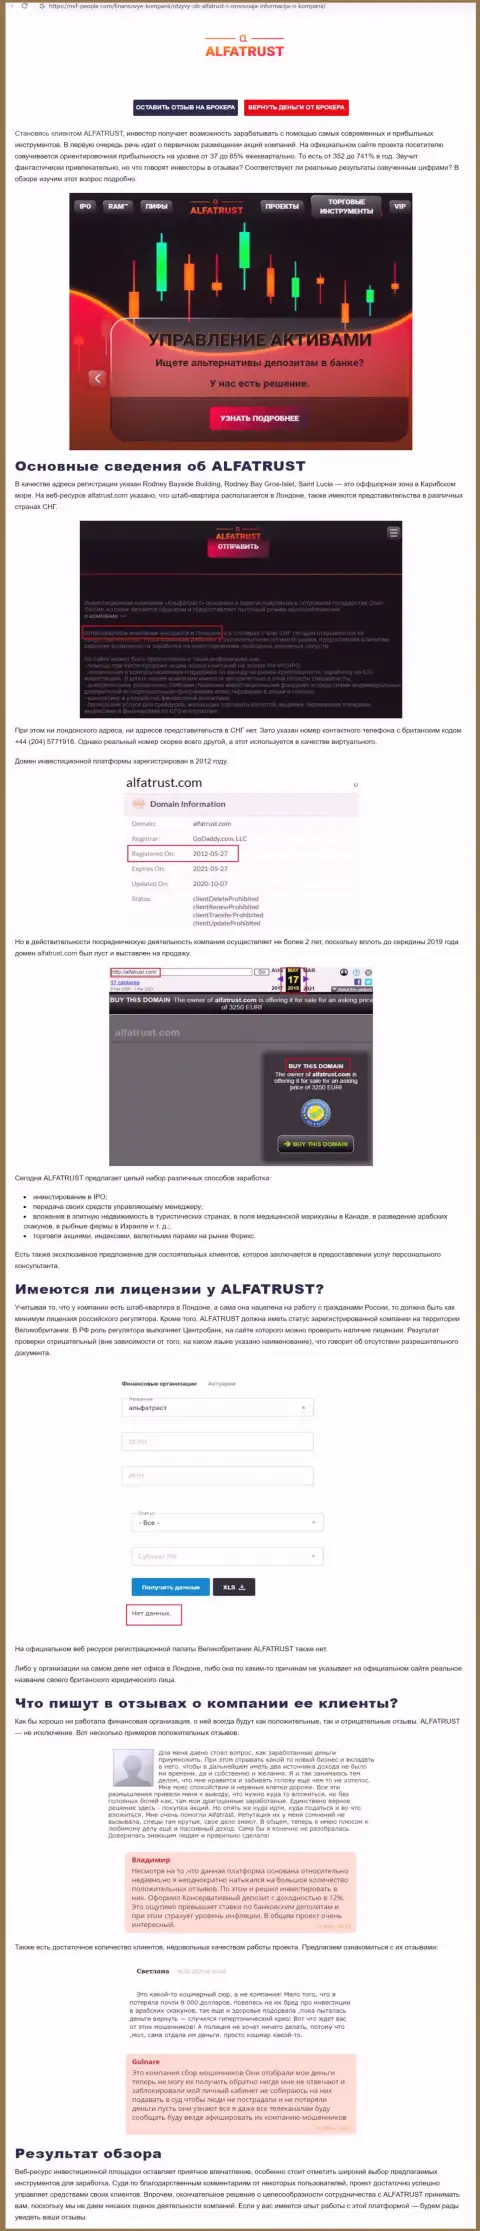 Web-сайт mif people com опубликовал данные о форекс организации AlfaTrust